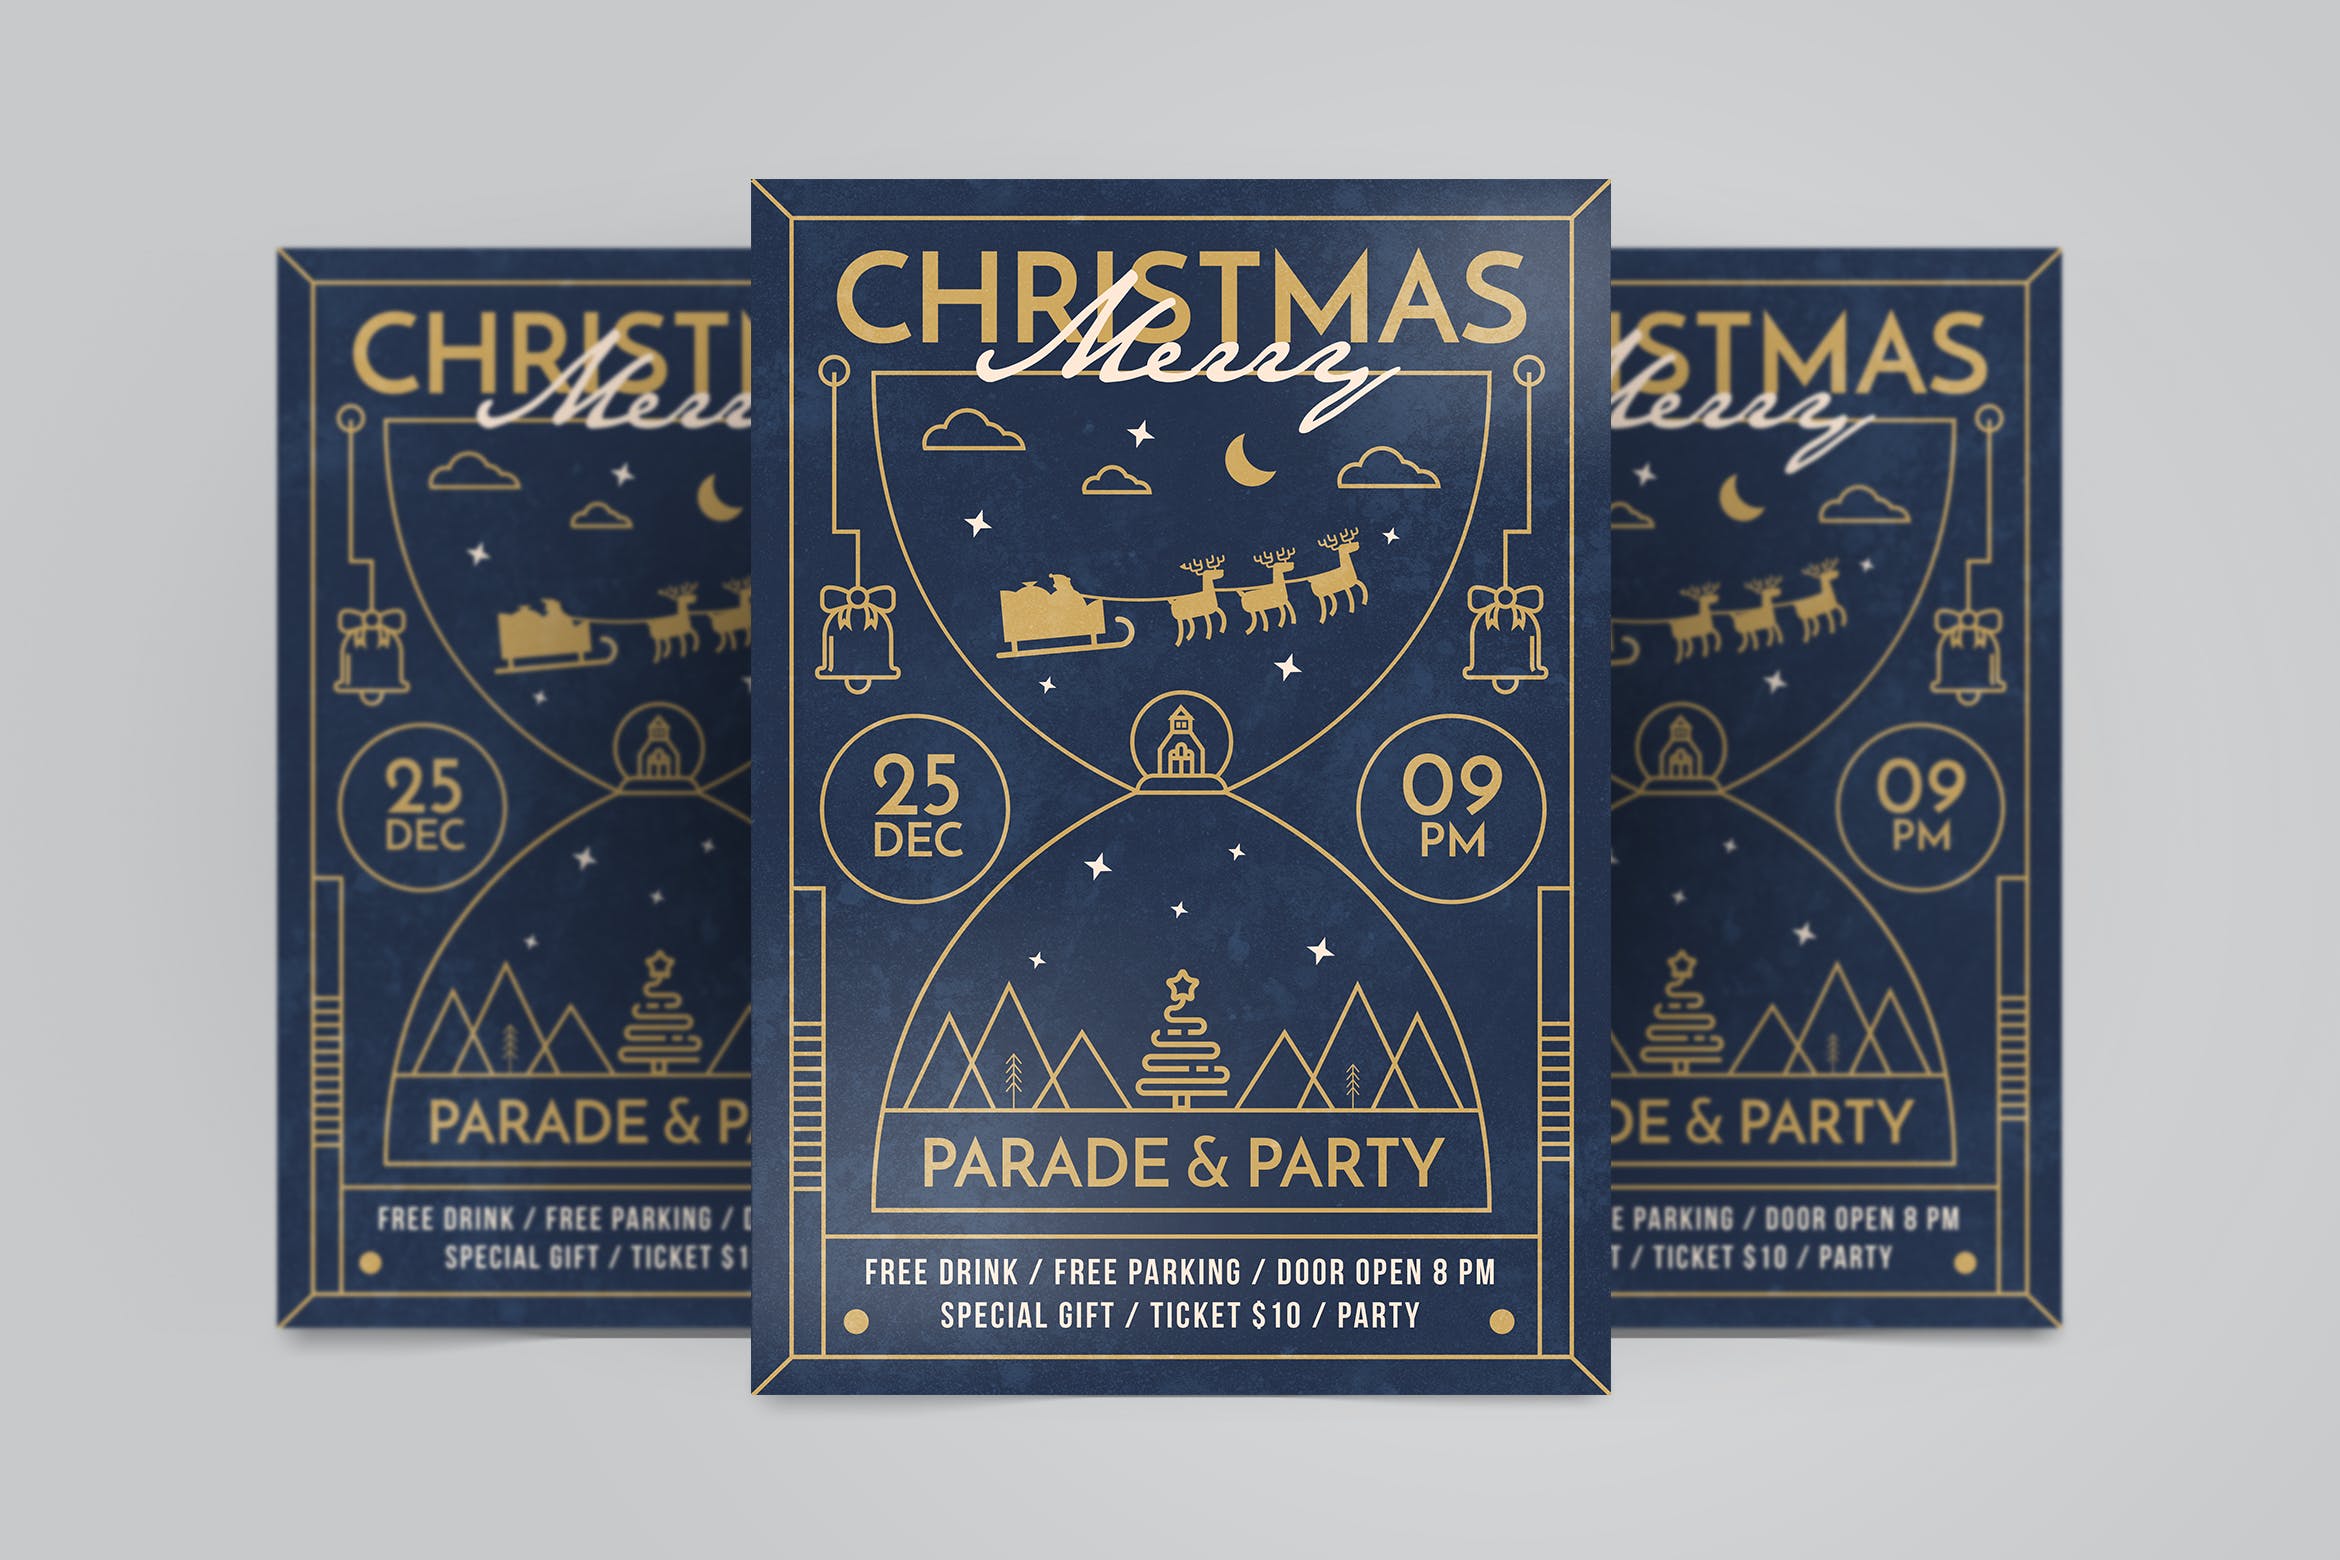 线条艺术设计风格圣诞节活动派对海报传单模板 Christmas Party Flyer插图